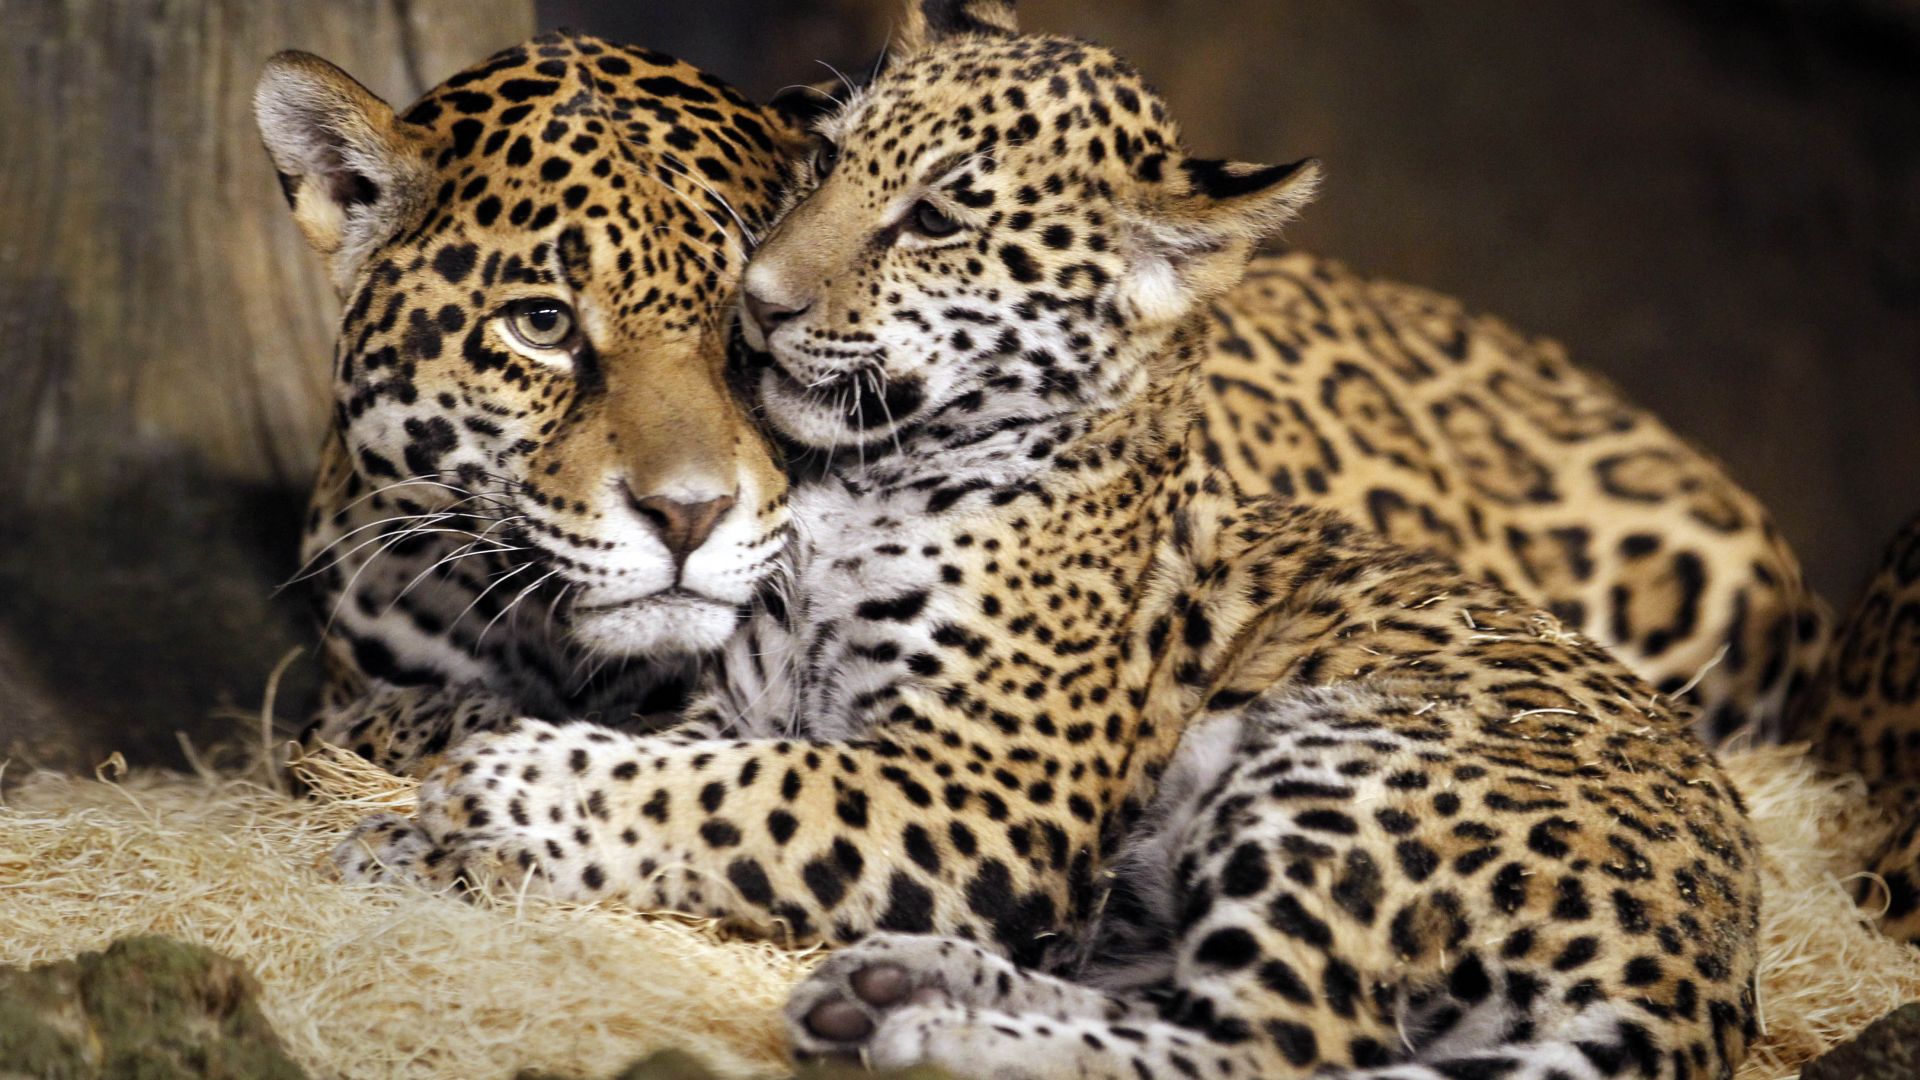 детеныш ягуар, дикая кошка, лицо, little jaguar, young jaguar, wild, cat, face (horizontal)